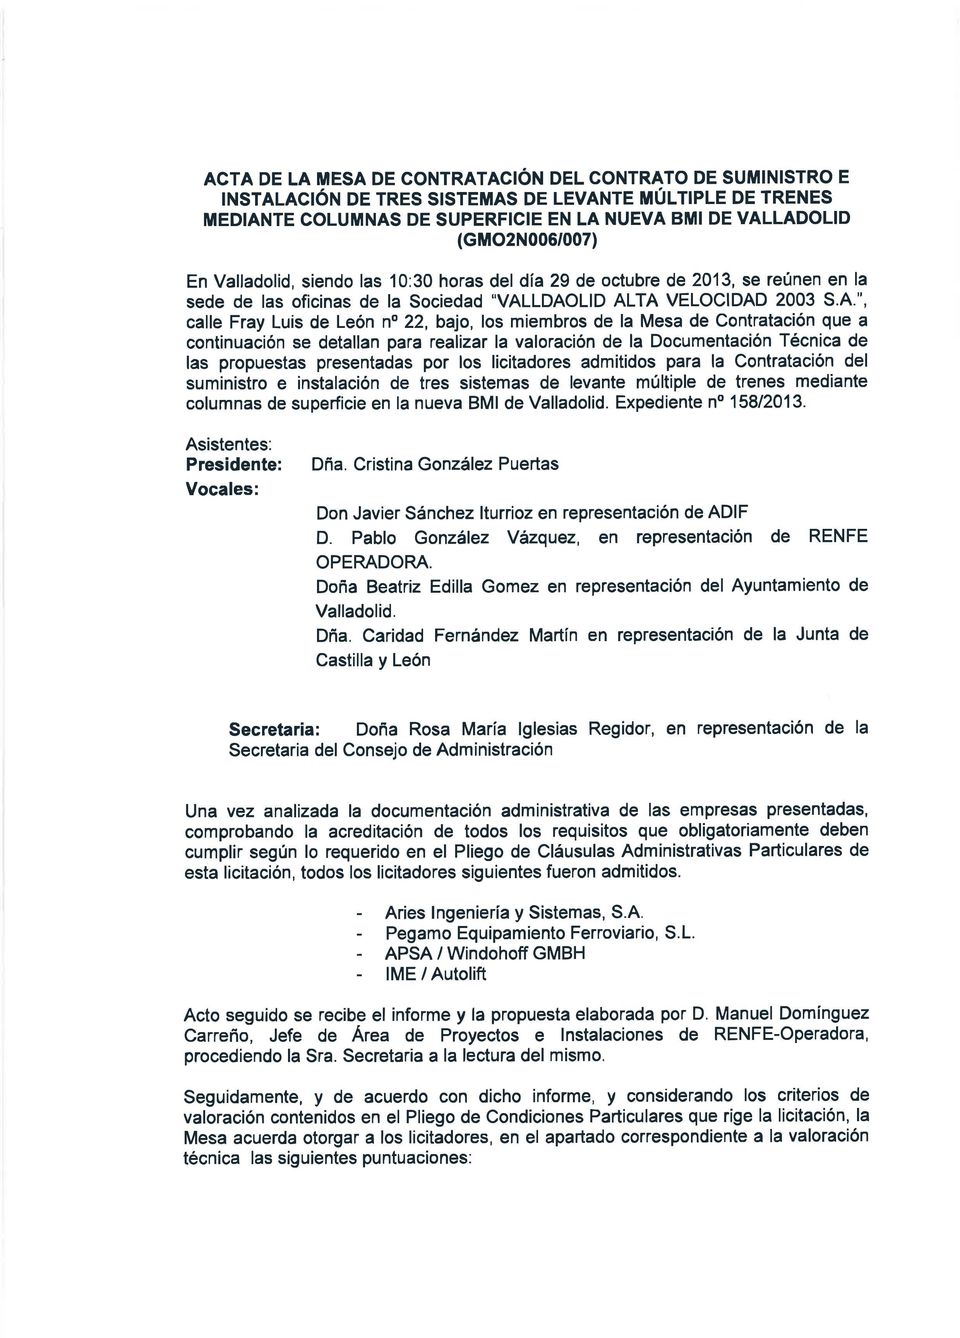 ", calle Fray Luis de León no 22, bajo,los miembros de la Mesa de Contratación que a continuación se detallan para realizar la valoración de la Documentación Técnica de las propuestas presentadas por